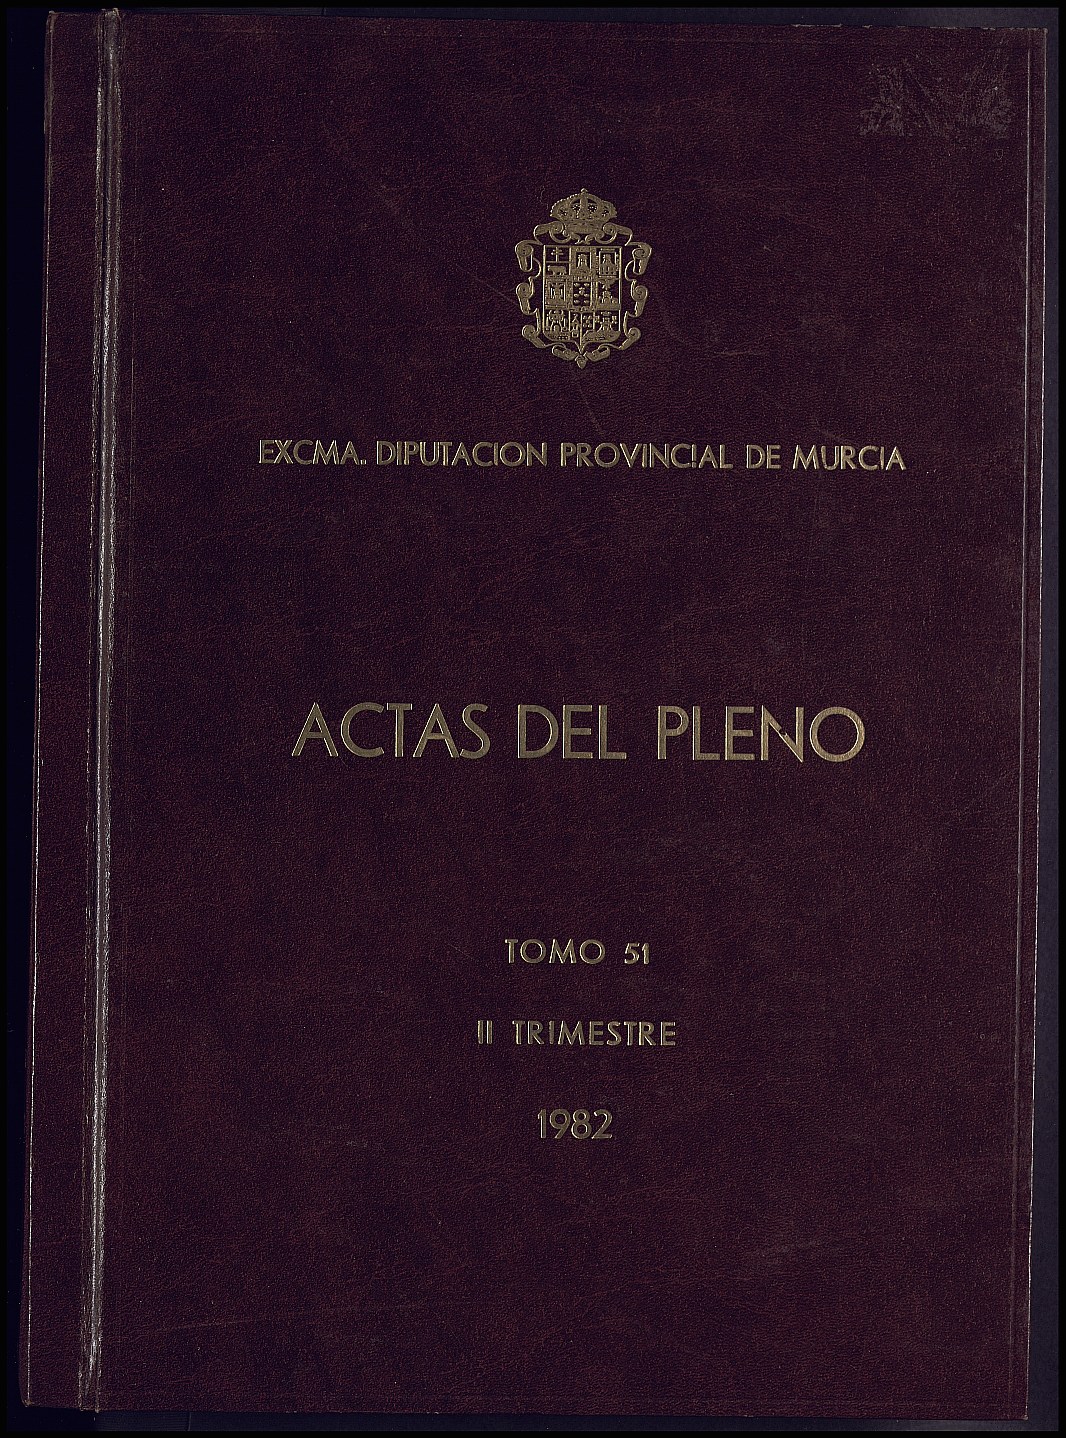 Registro de actas de sesiones del Pleno de la Diputación Provincial de Murcia. Año 1982.